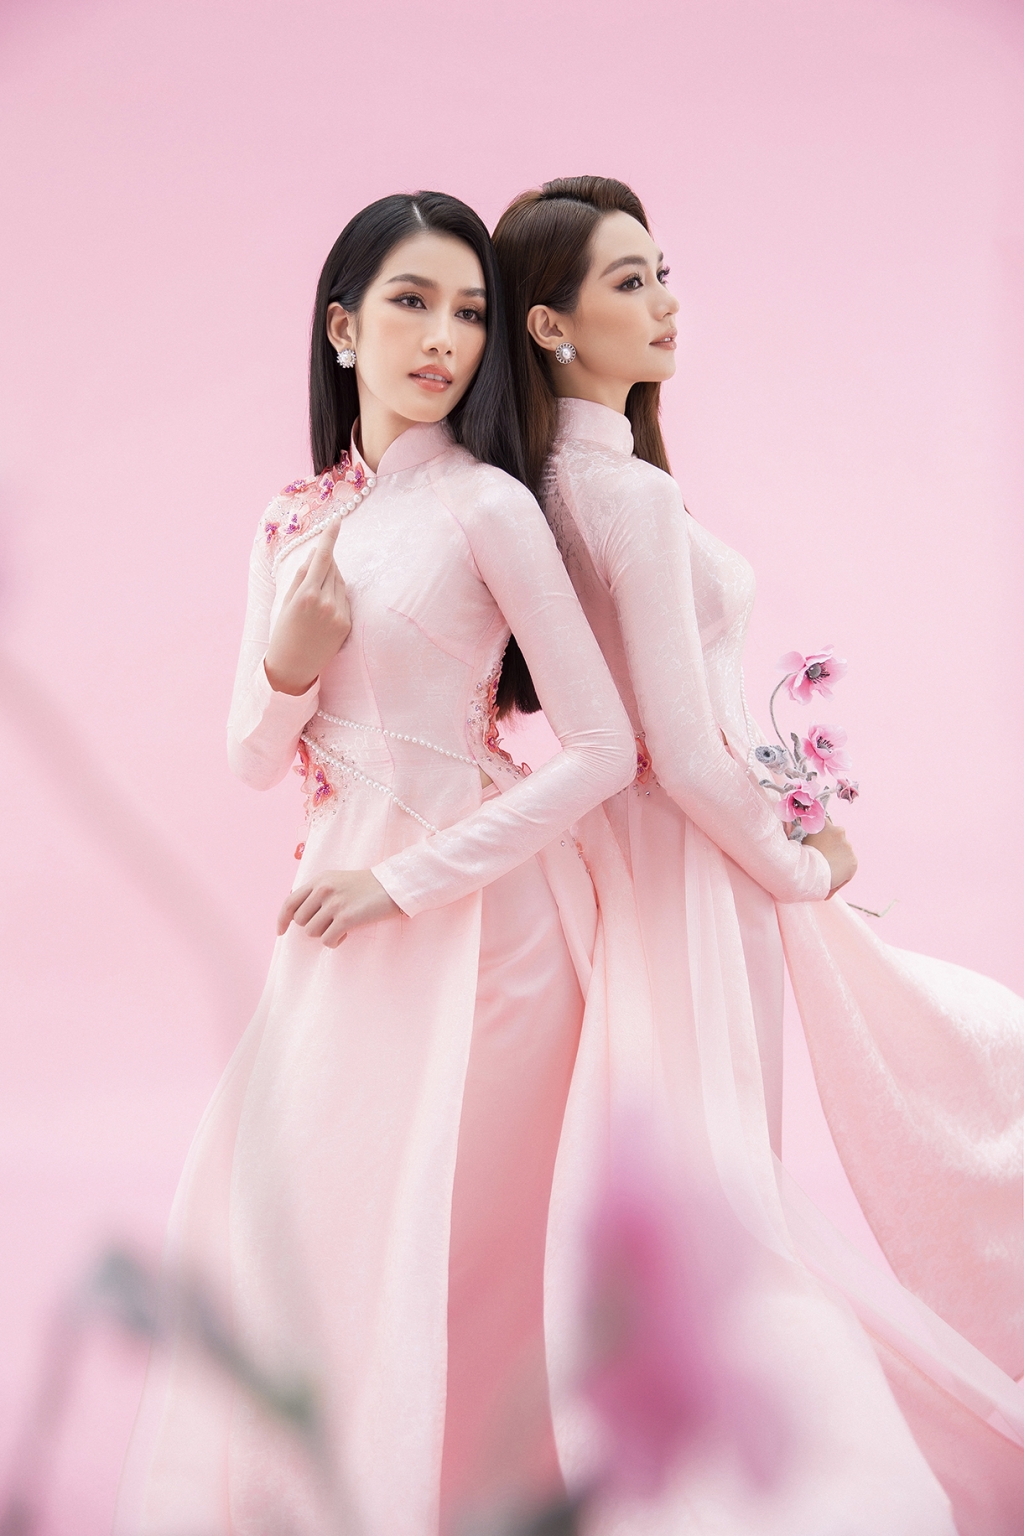 Màn đọ sắc cực ngọt của Á hậu Phương Anh cùng Miss International - Hoa hậu Quốc tế 2019 trong bộ ảnh mới